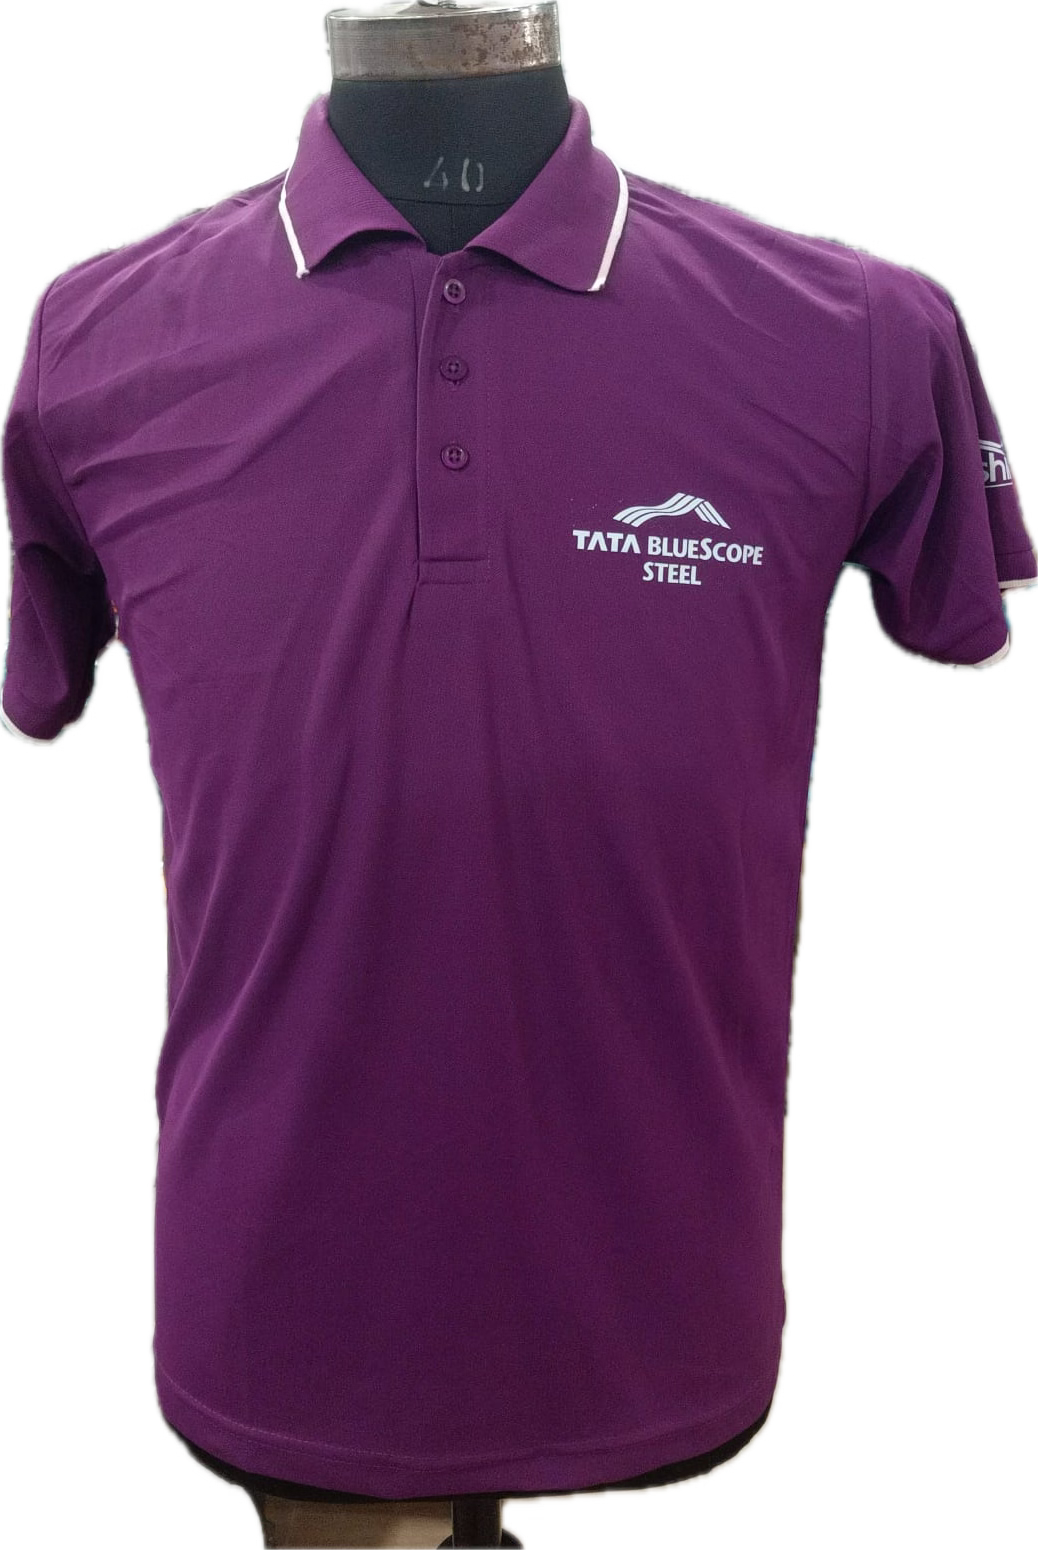 Tshirt Sap Matty Purple with White Tipping. Premium Tshirt